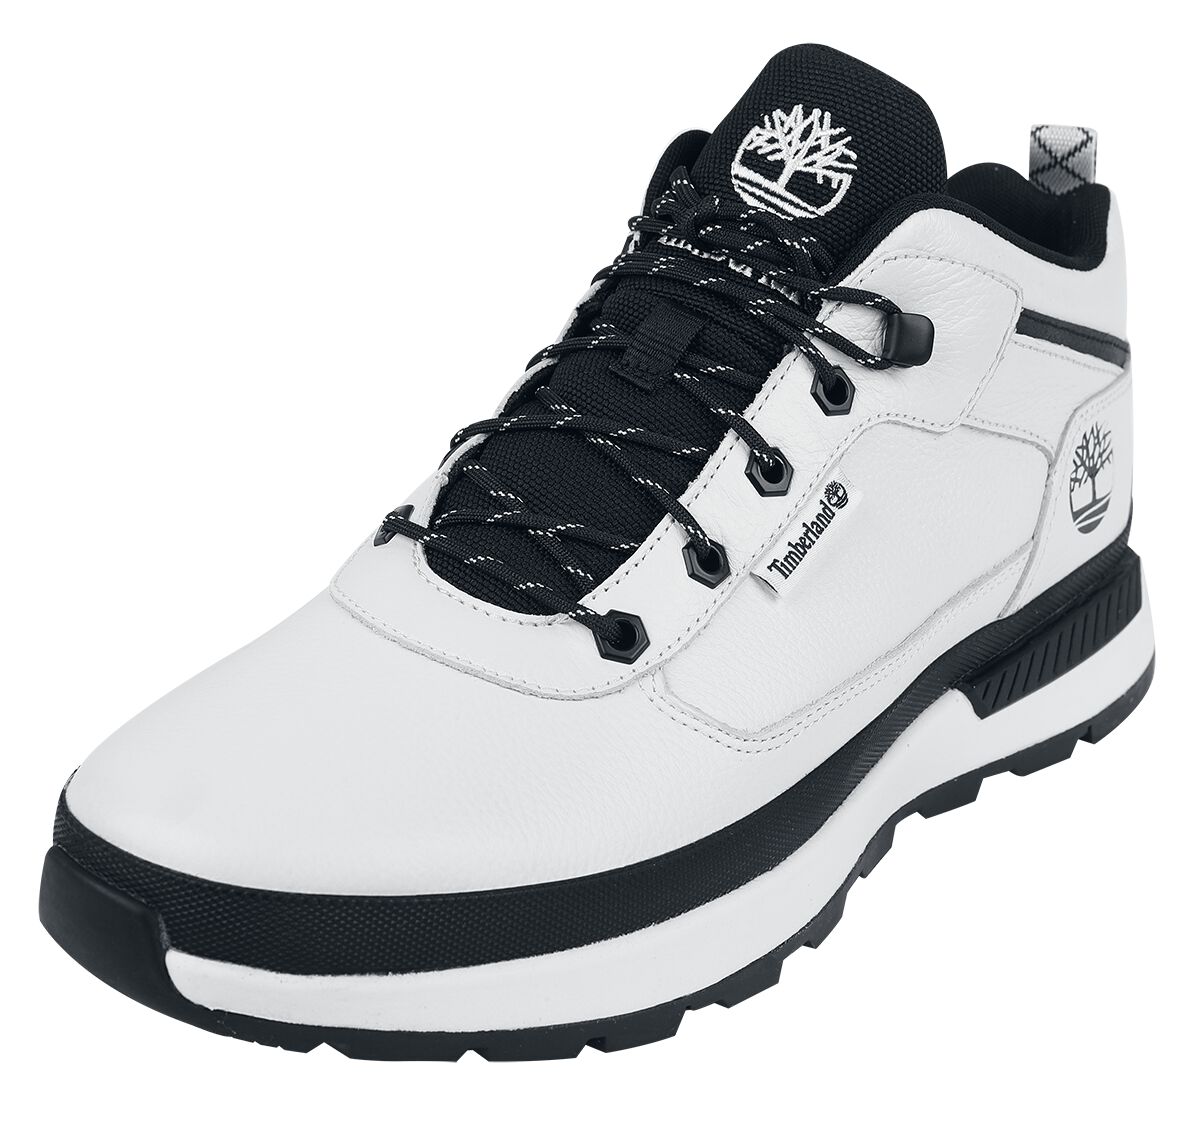 Timberland Sneaker - Field Trekker Mid Lace Up - EU41 bis EU46 - für Männer - Größe EU41 - weiß